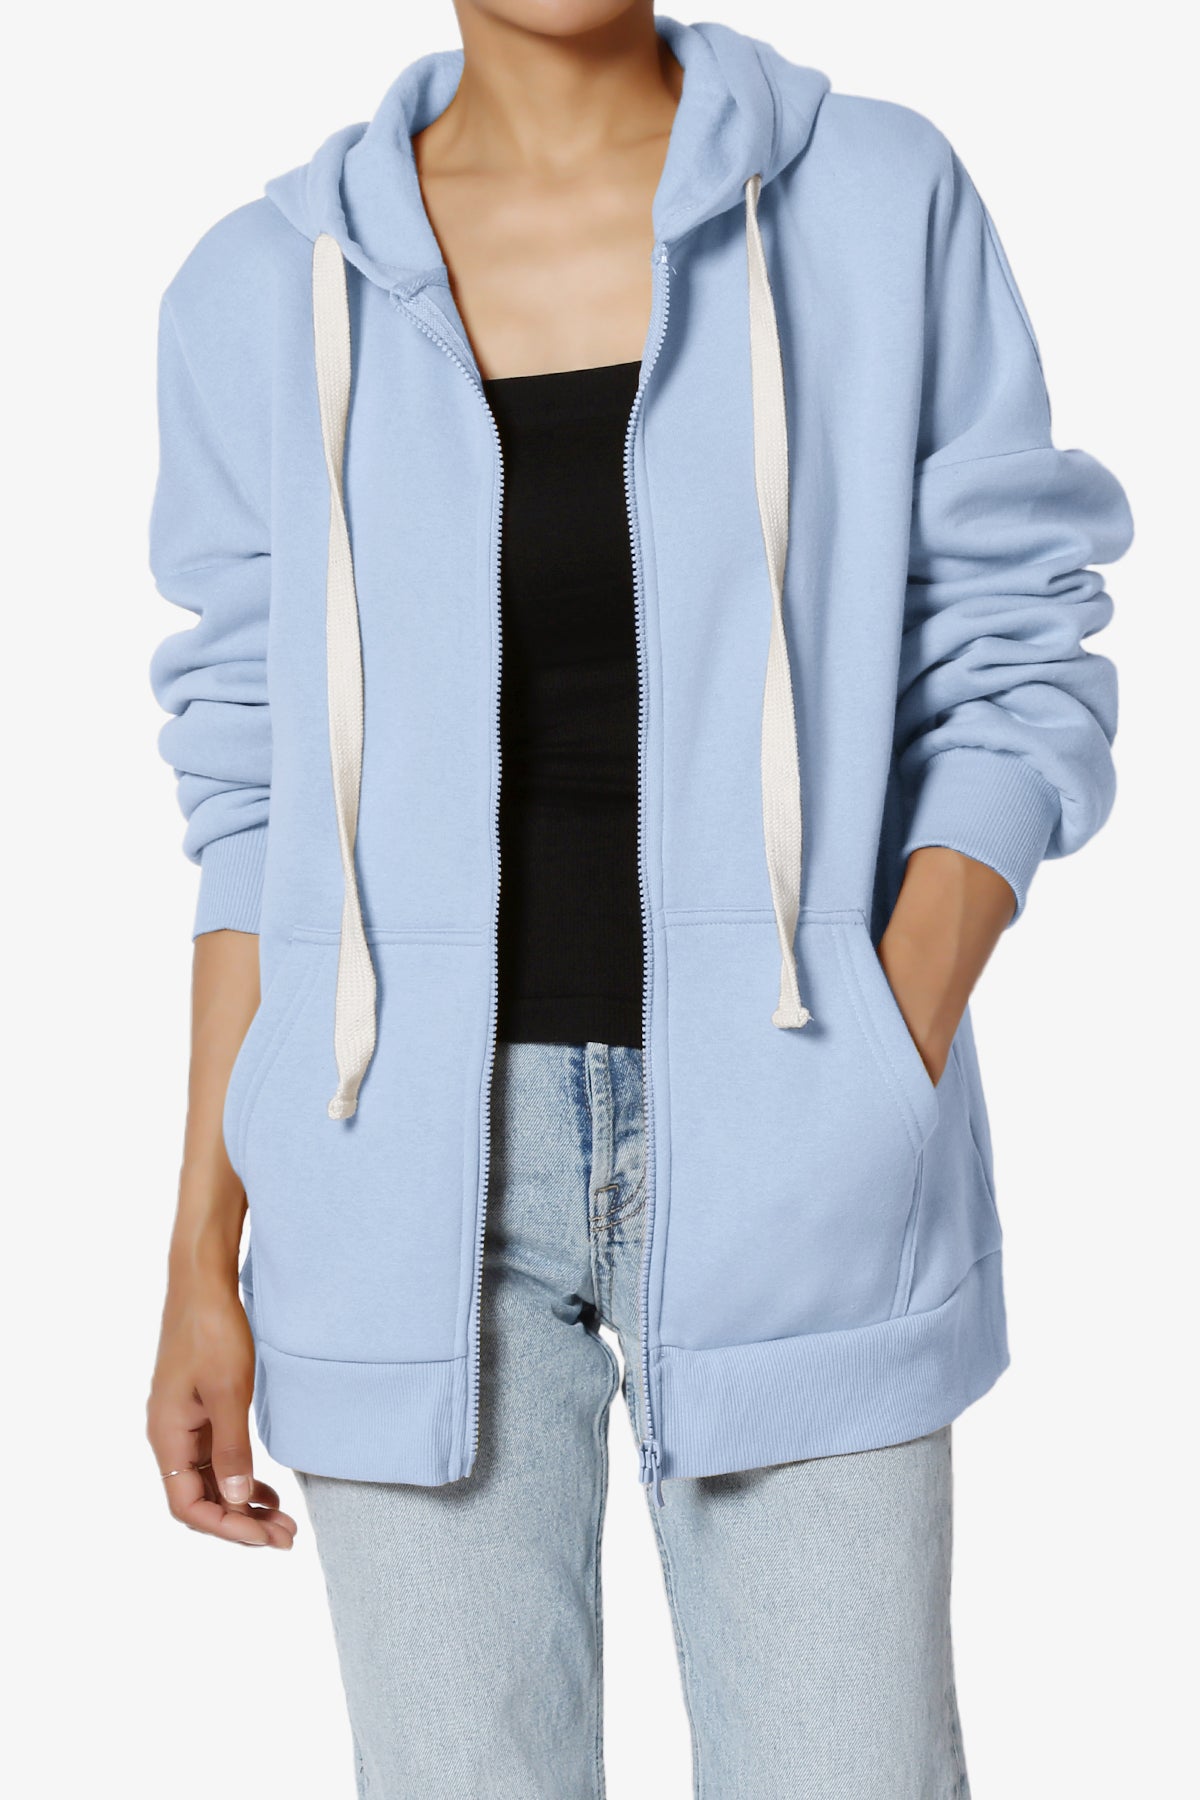 Accie Fleece Zip Hooded Jacket CREAM BLUE_1